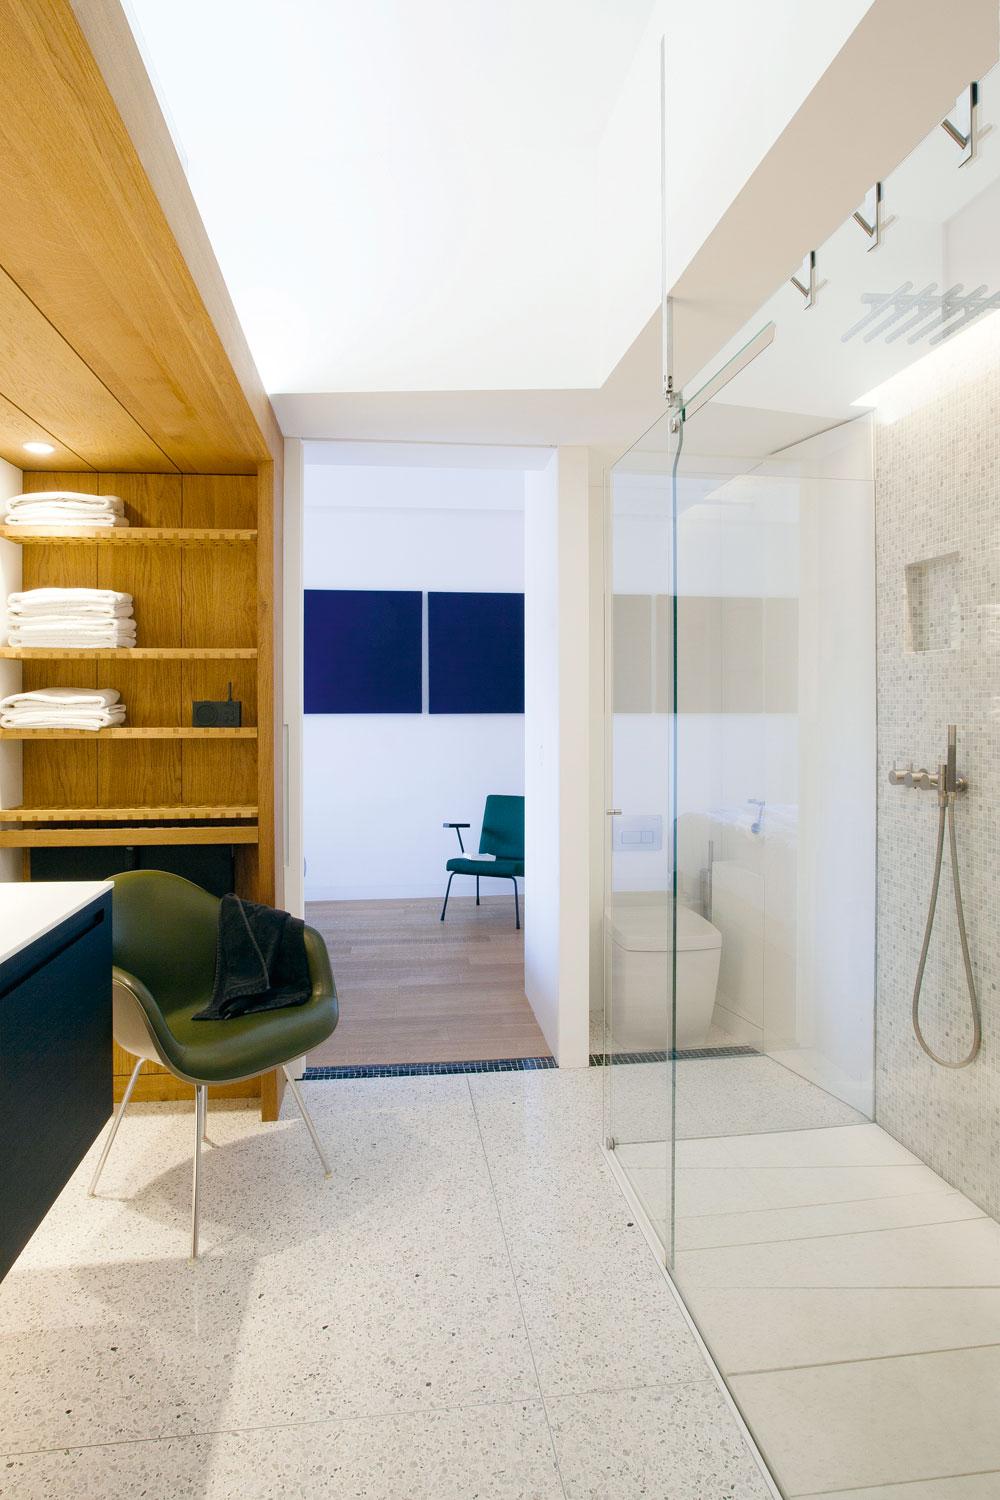 La salle de bains est implantée carrément dans le couloir des chambres et s'isole grâce à des coulissants de part et d'autre.